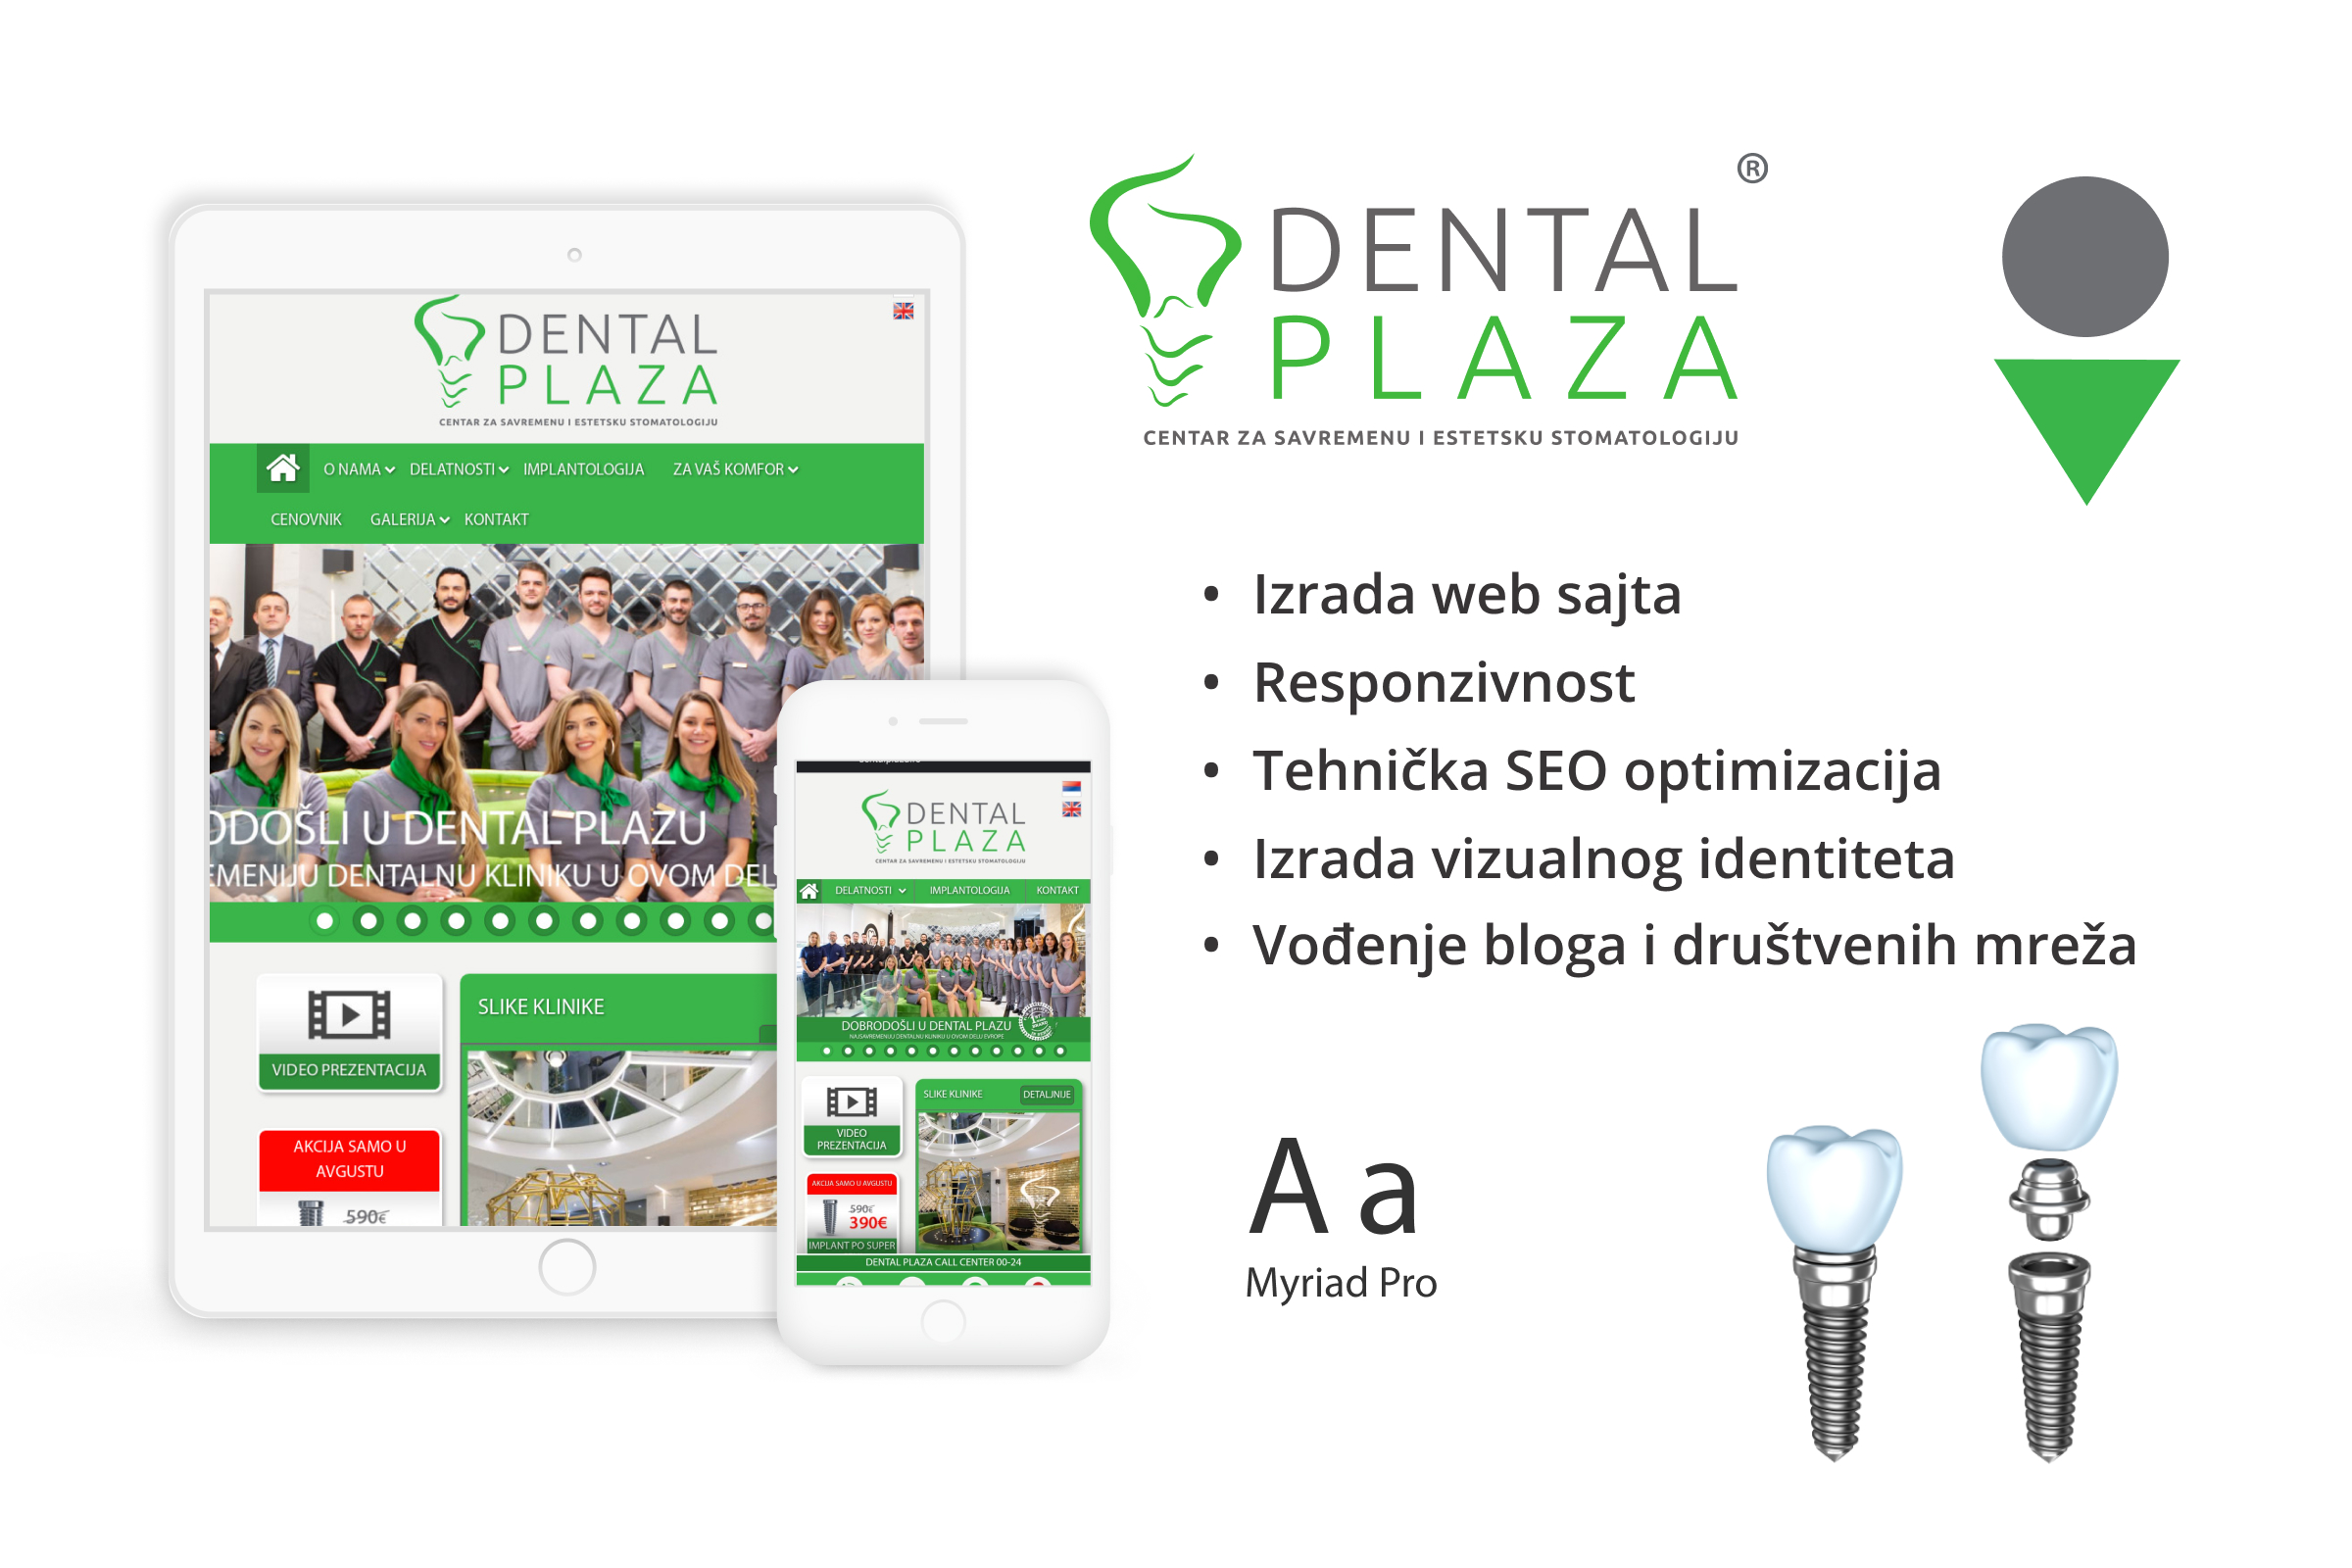 Dental Plaza